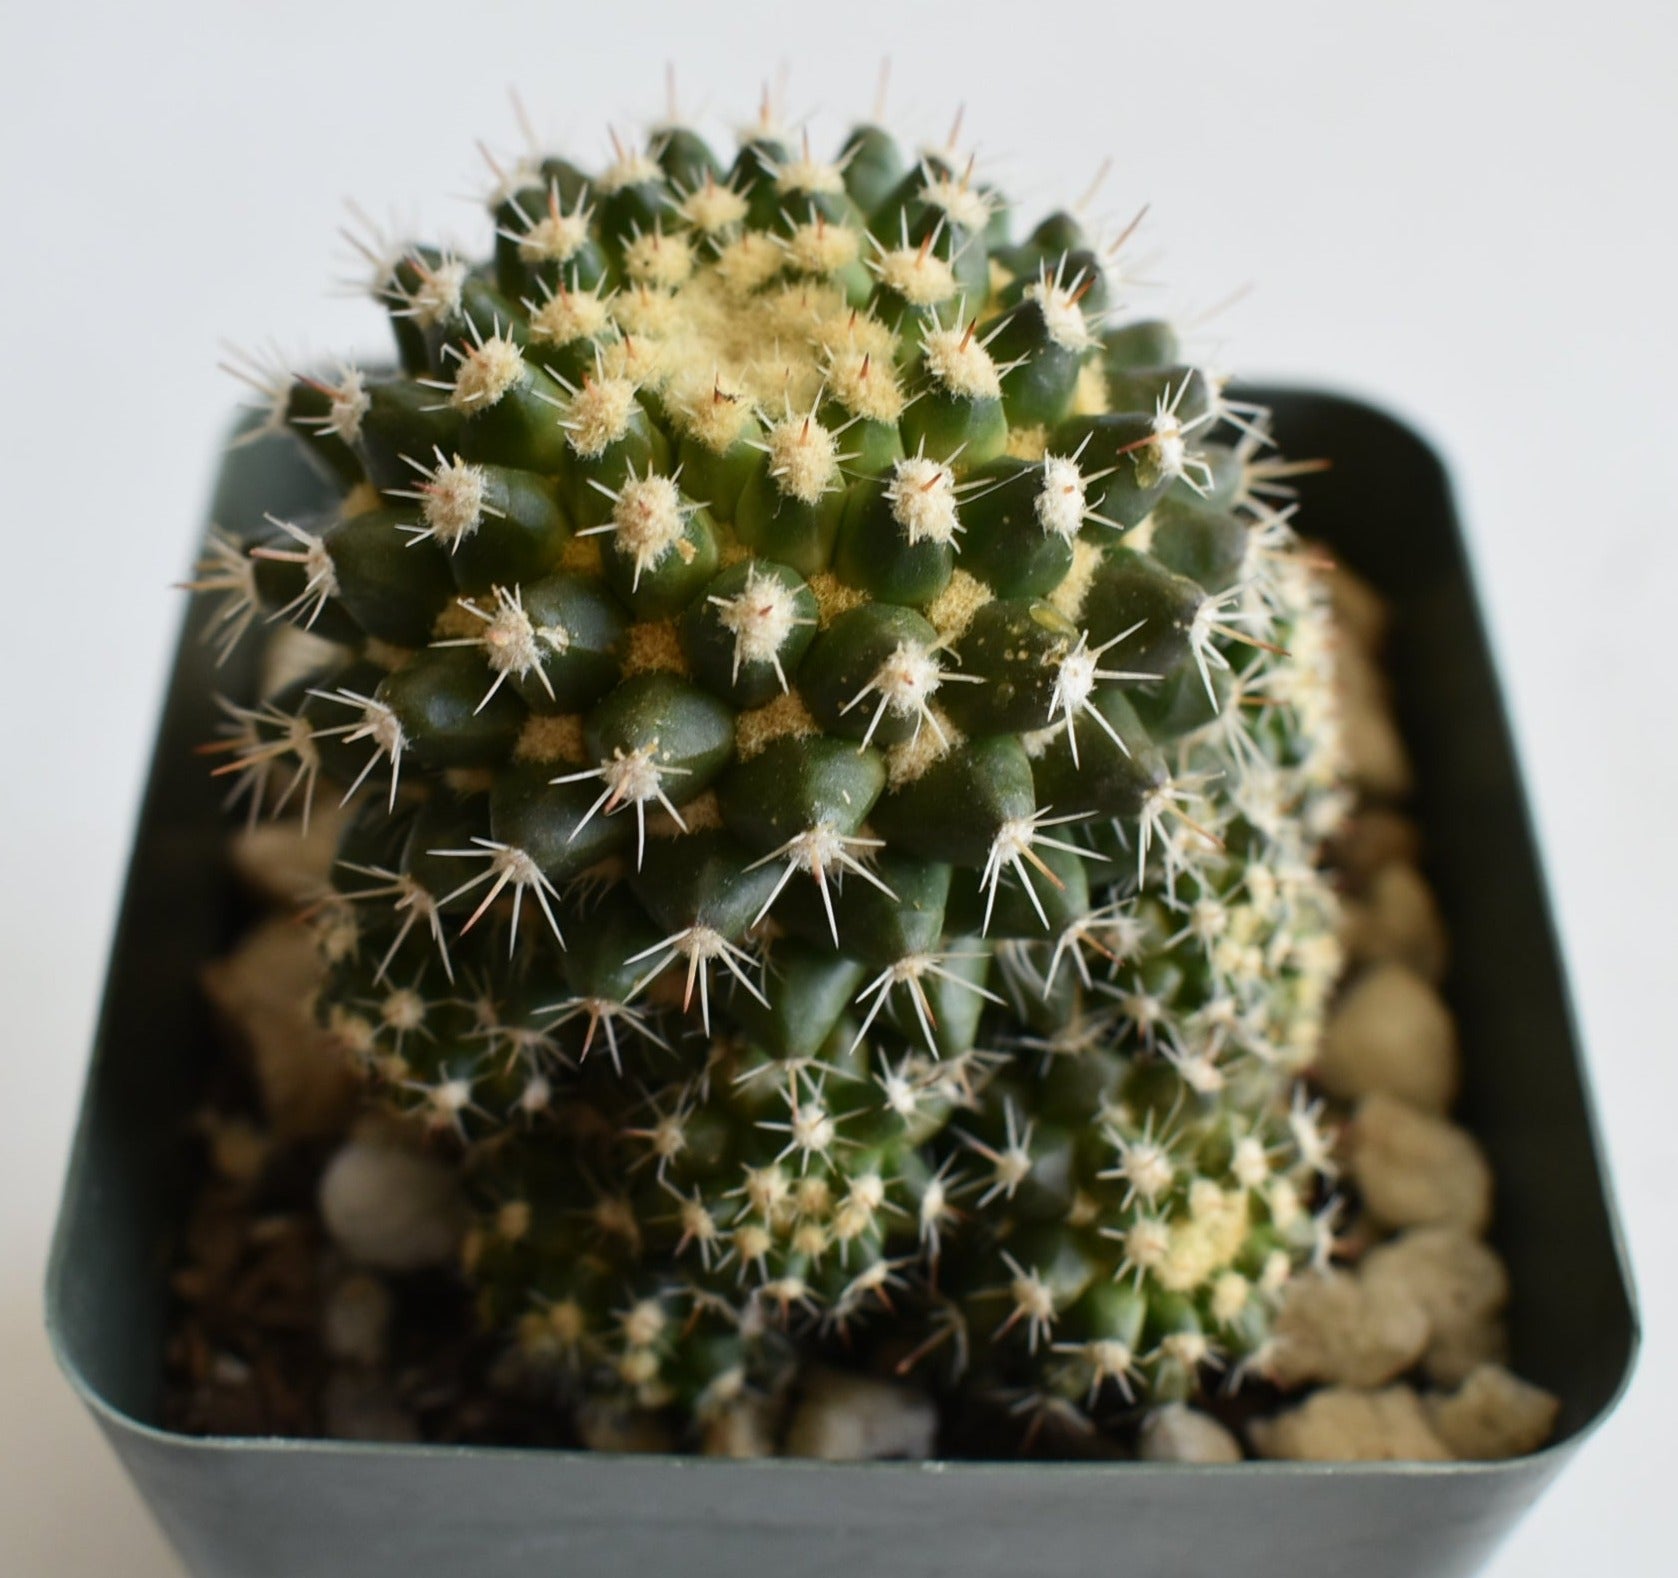 Mammillaria voburnensis Live Cactus In 4 Inch